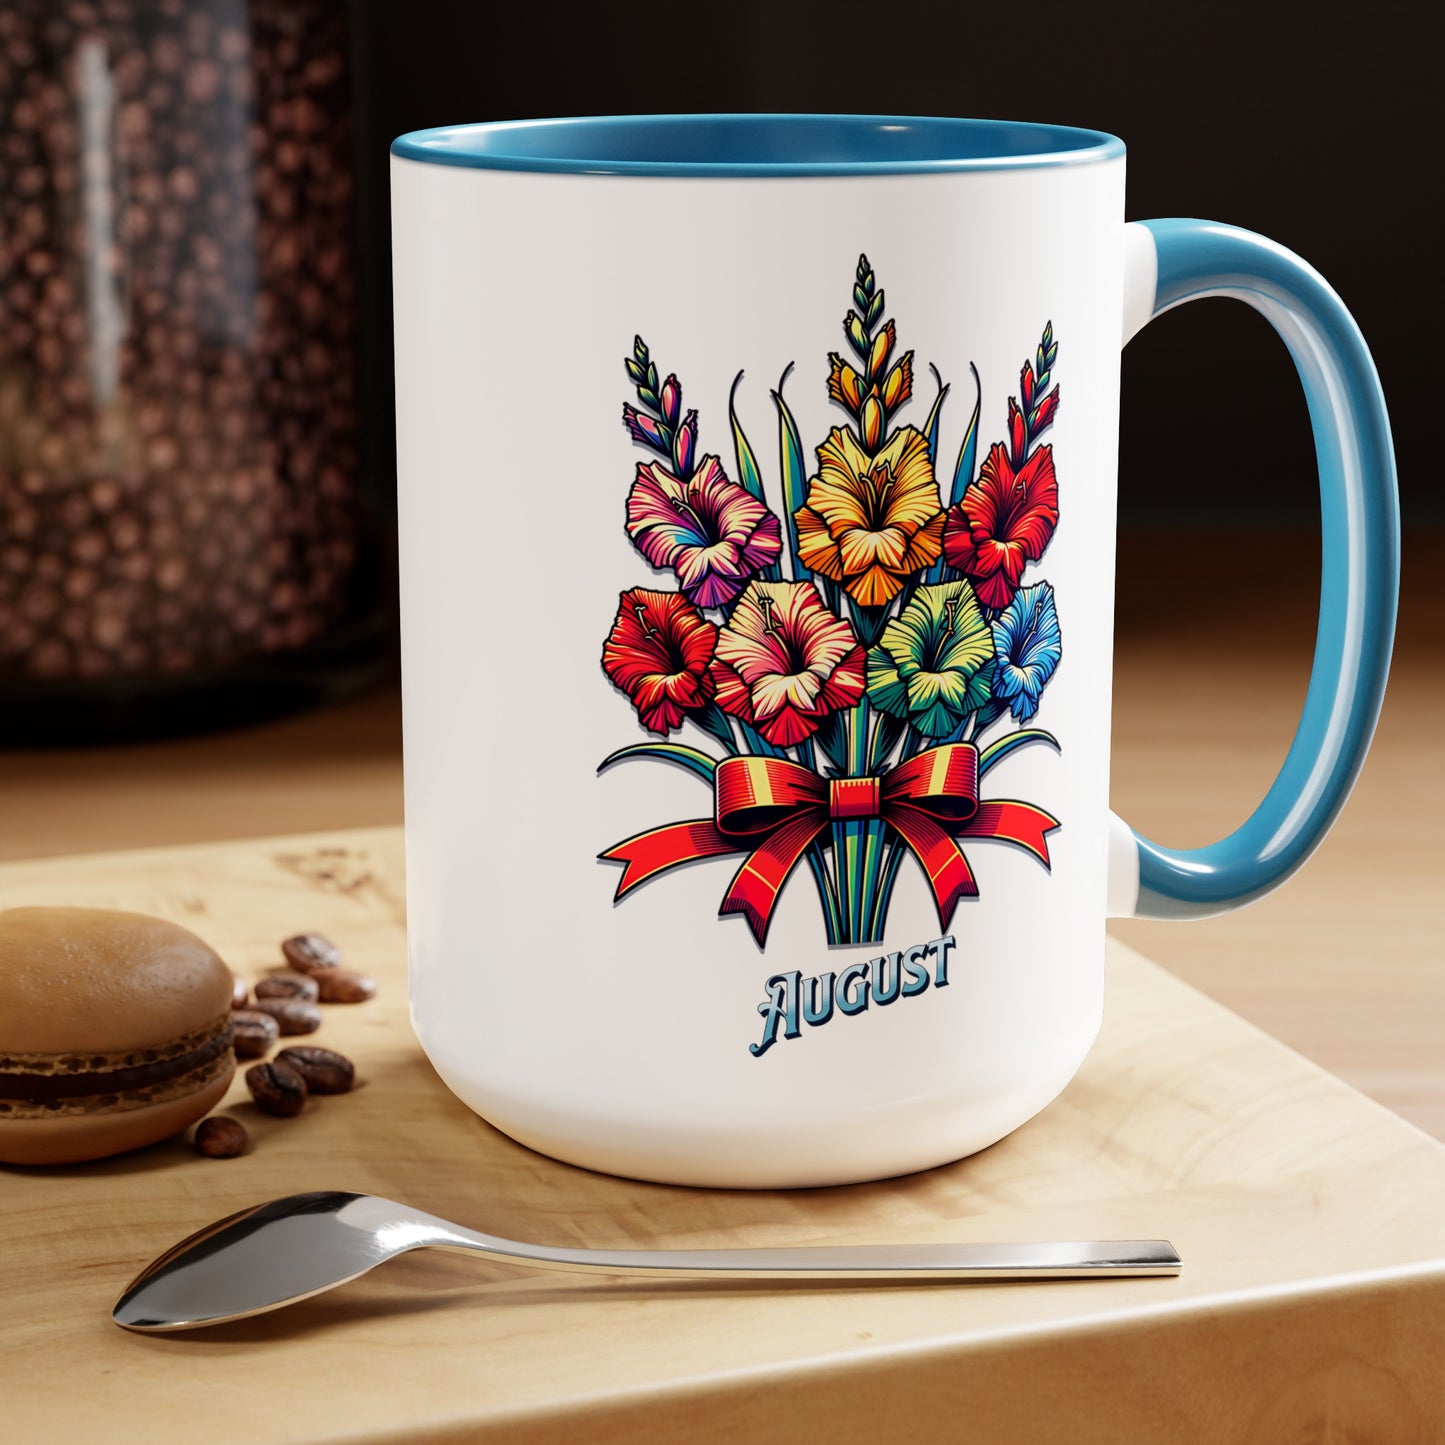 Two-Tone Coffee Mugs, 15oz August Mug, Gladiolas